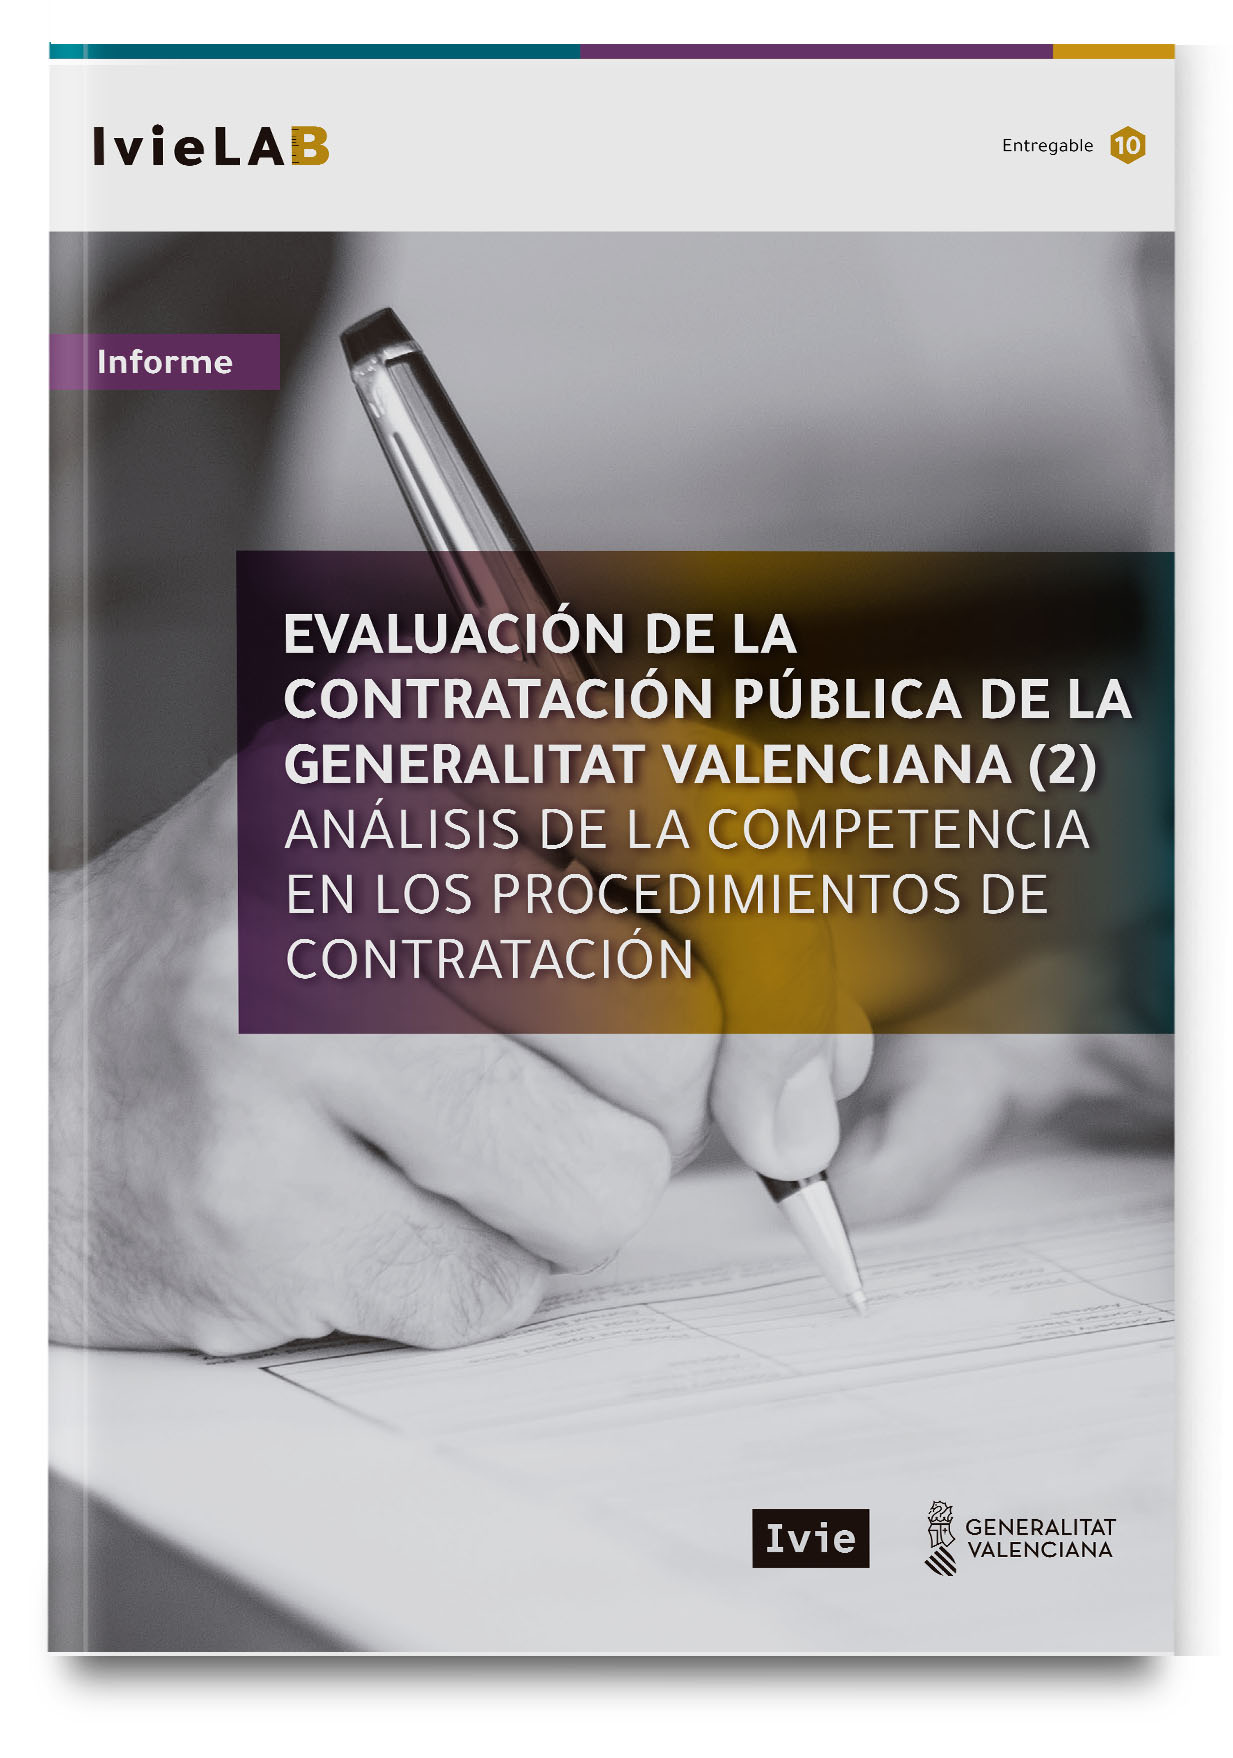 IvieLAB: Evaluación de la contratación pública de la Generalitat Valenciana (2). Análisis de la competencia en los procedimientos de contratación